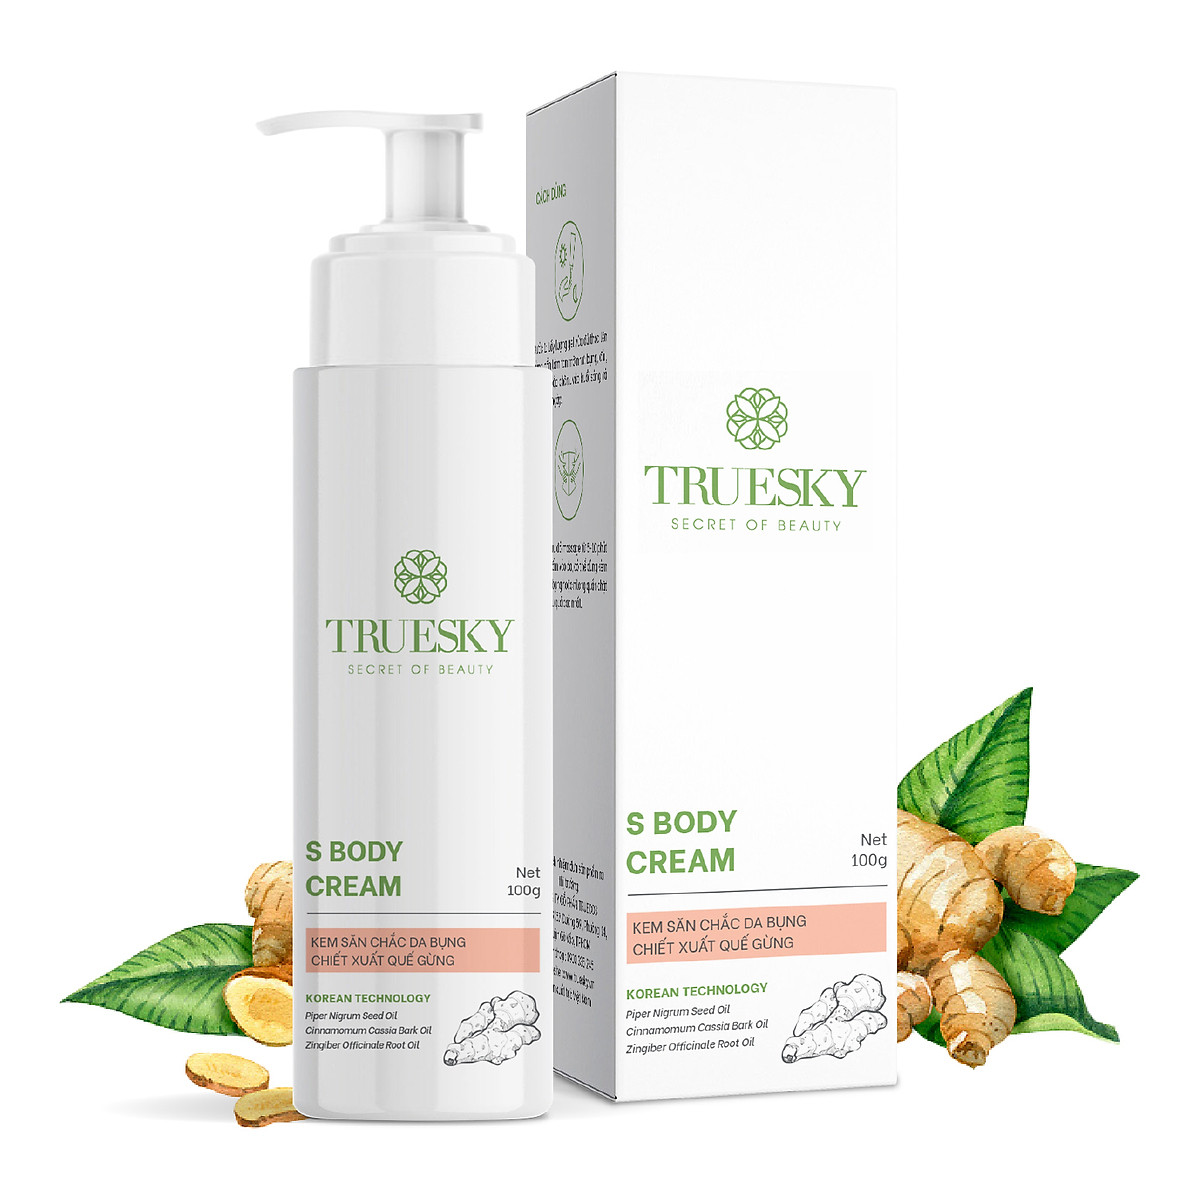 Kem tan mỡ bụng Truesky S Body Cream chiết xuất quế gừng an toàn và hiệu quả 100g